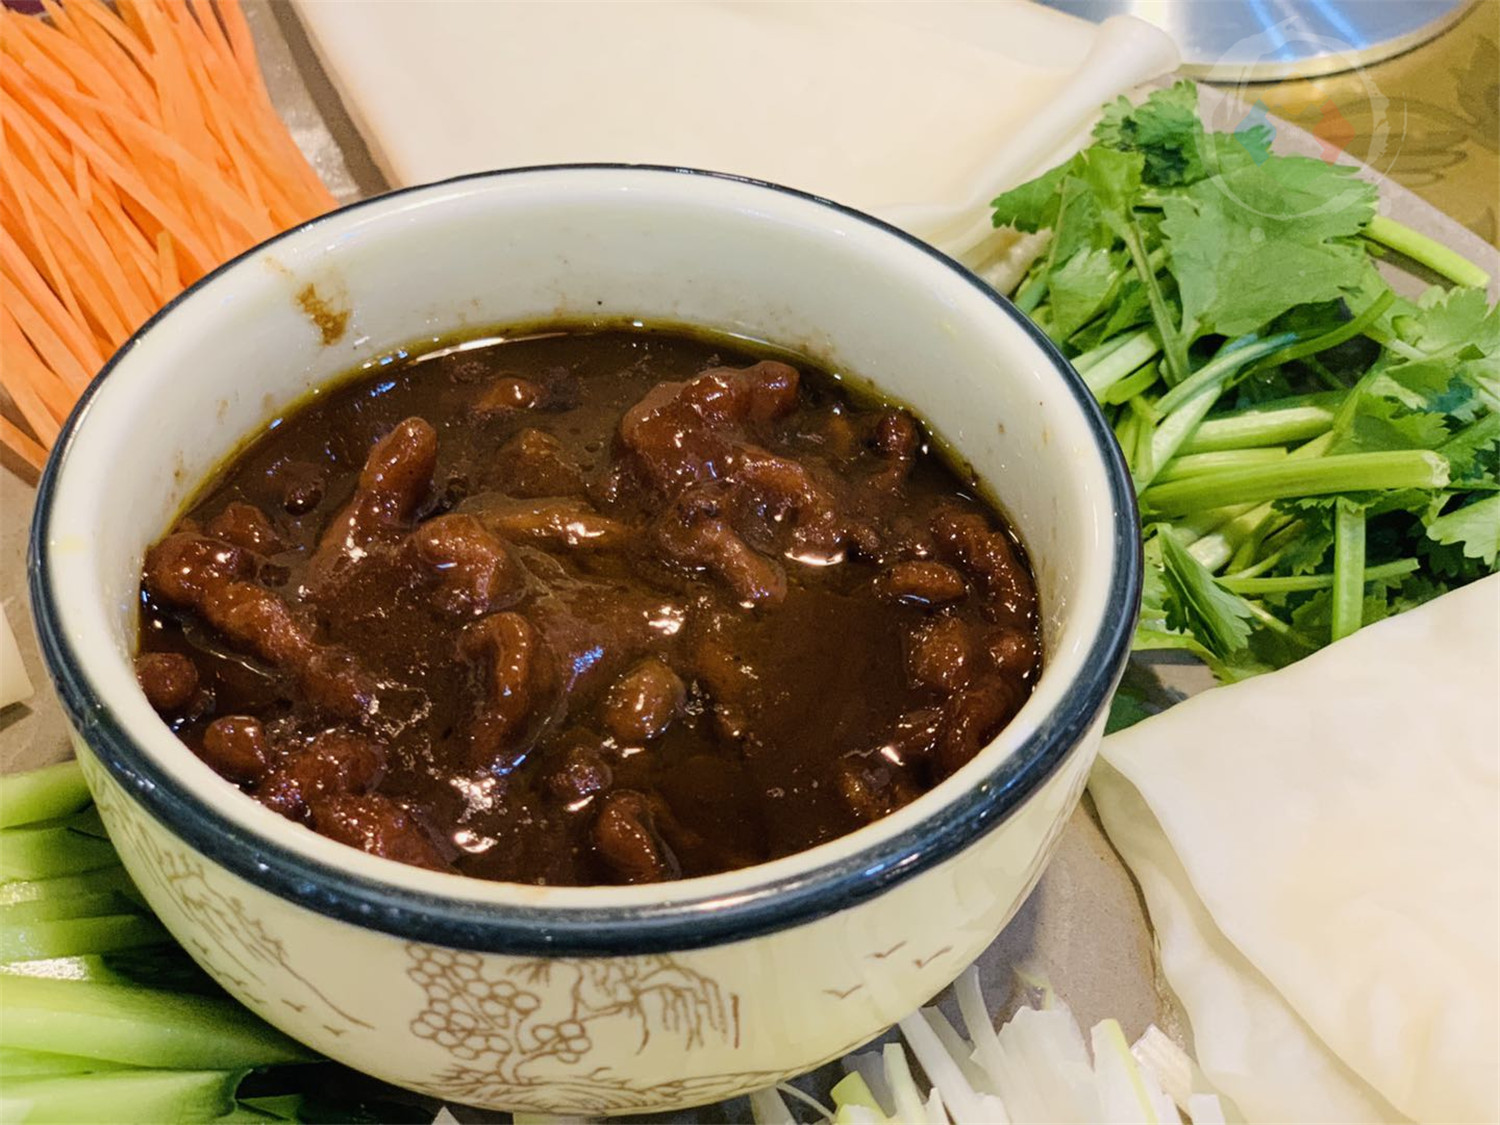 重庆哪里有正宗的东北菜？48元一份的锅包肉，分量实在太少了